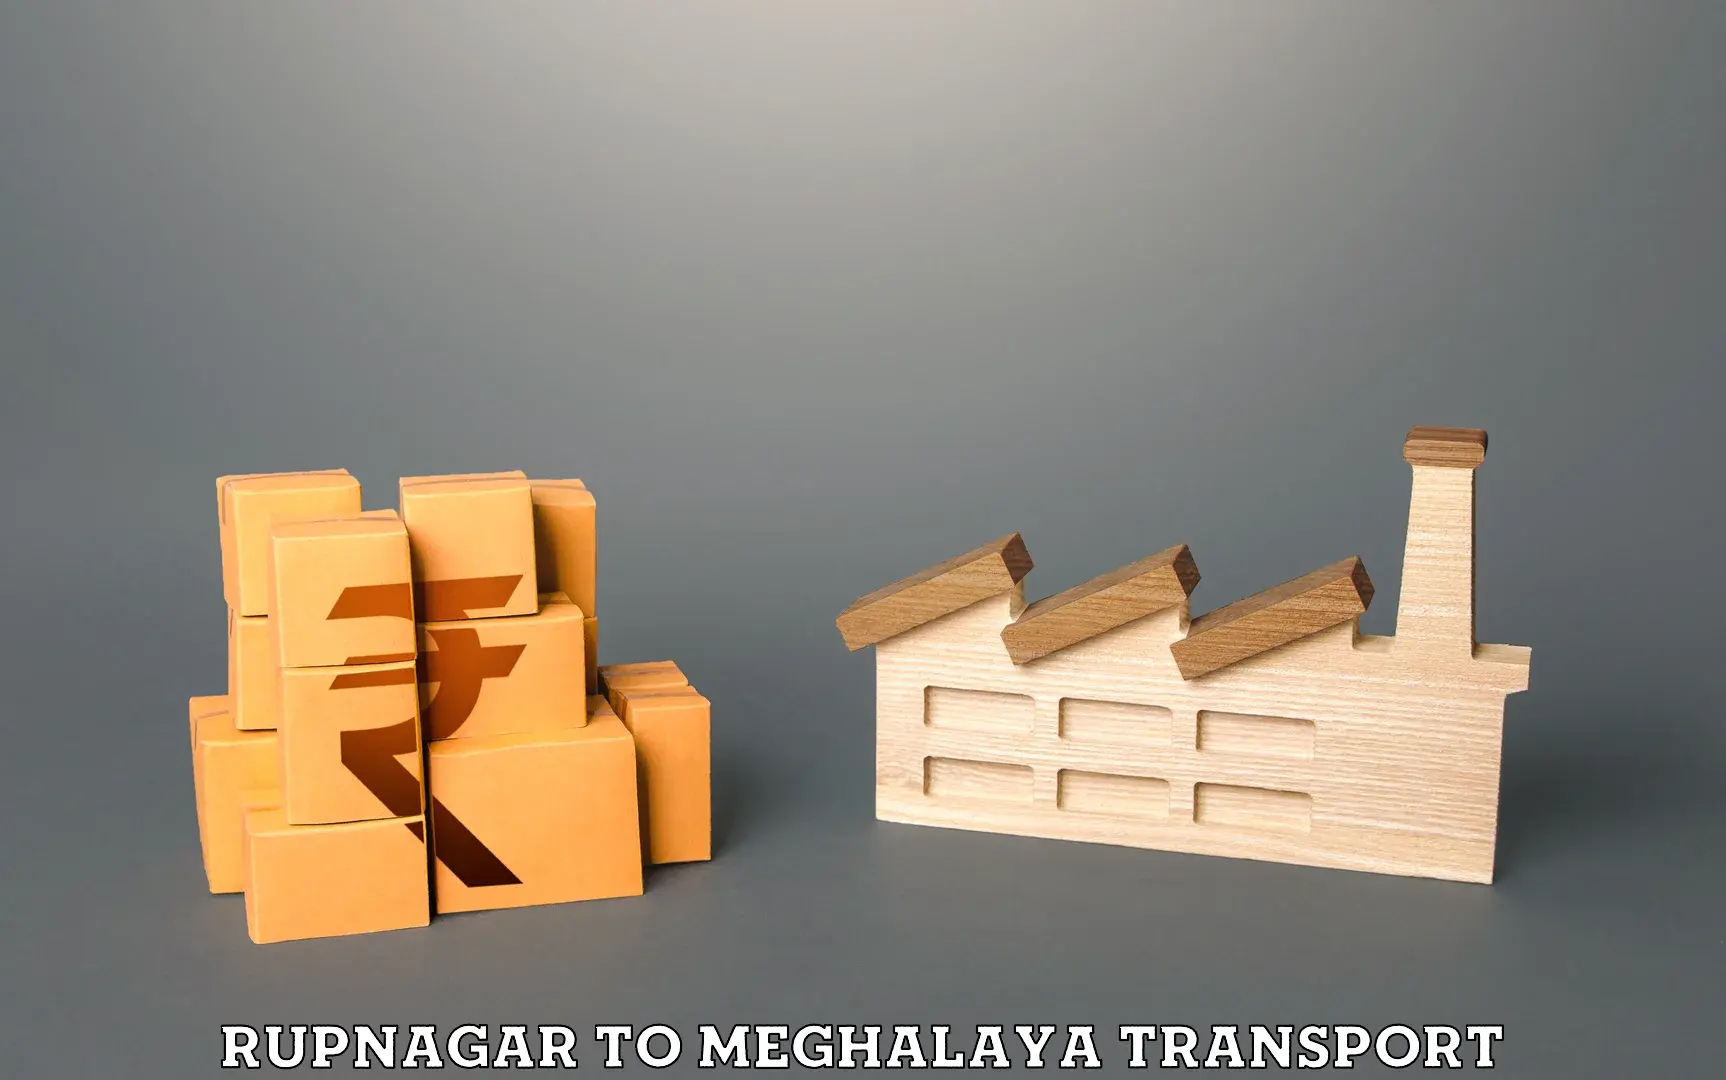 Furniture transport service Rupnagar to Meghalaya